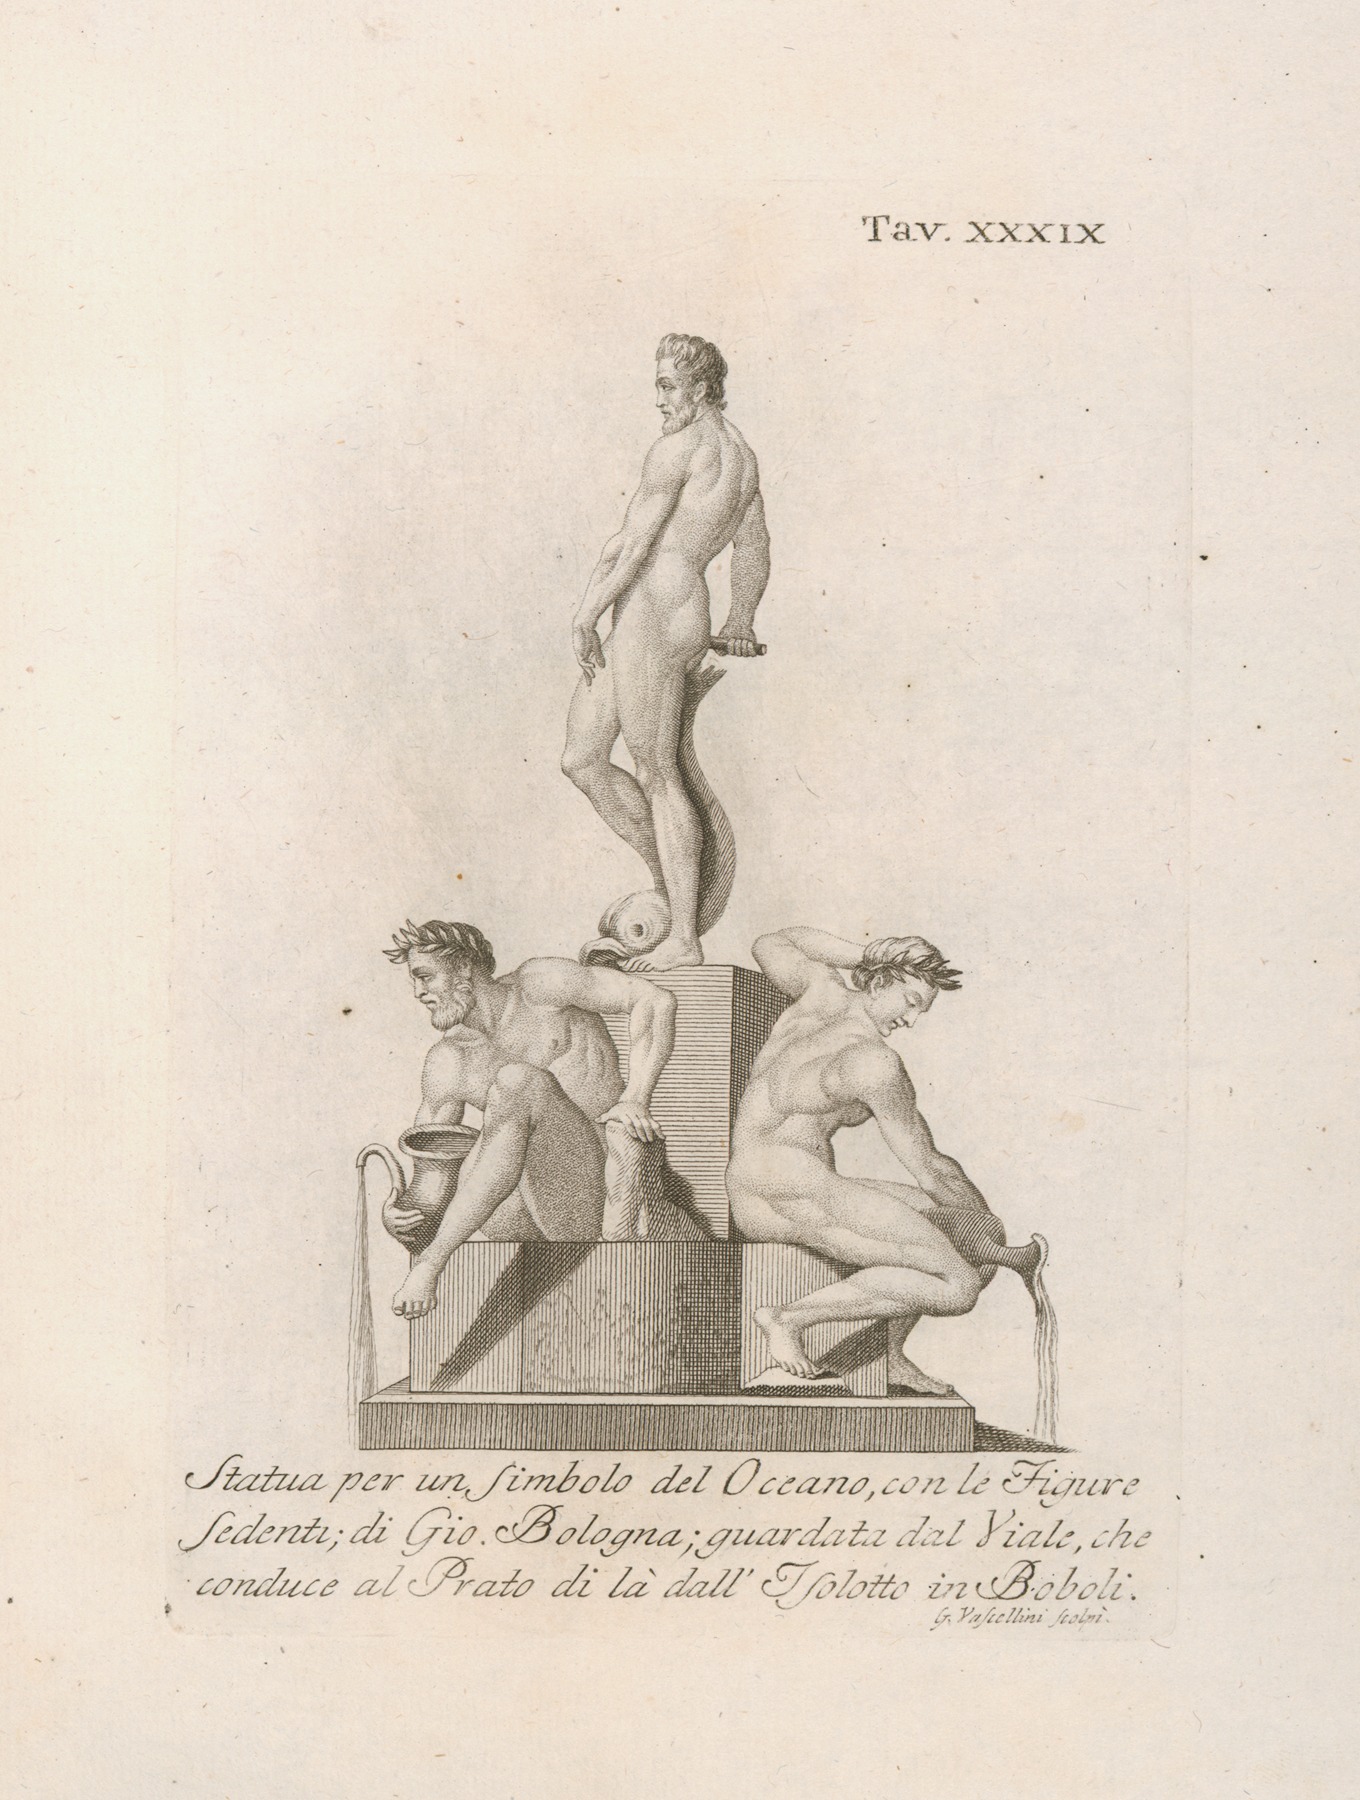 Gaetano Vascellini - Statua per un Simbolo del Oceano, con le Figure Sedenti; di Gio. Bologna